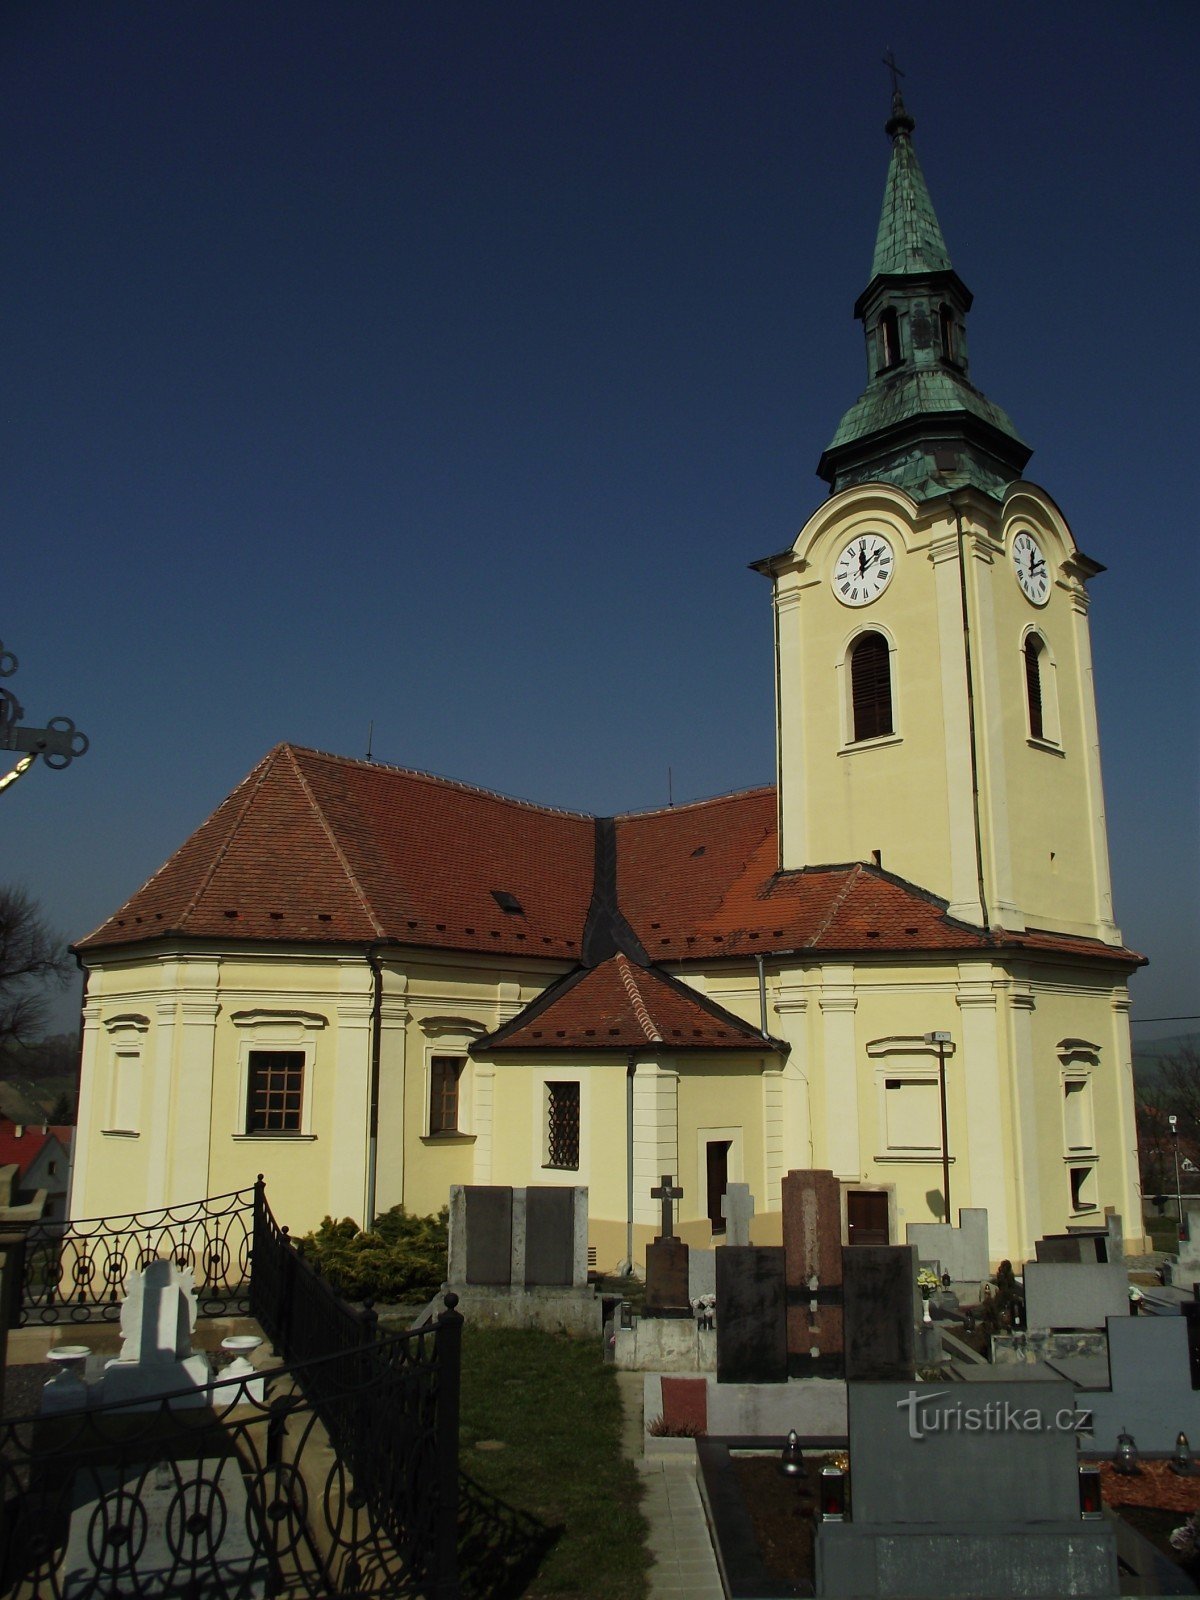 Bilovice - église de St. Jean le Baptiste